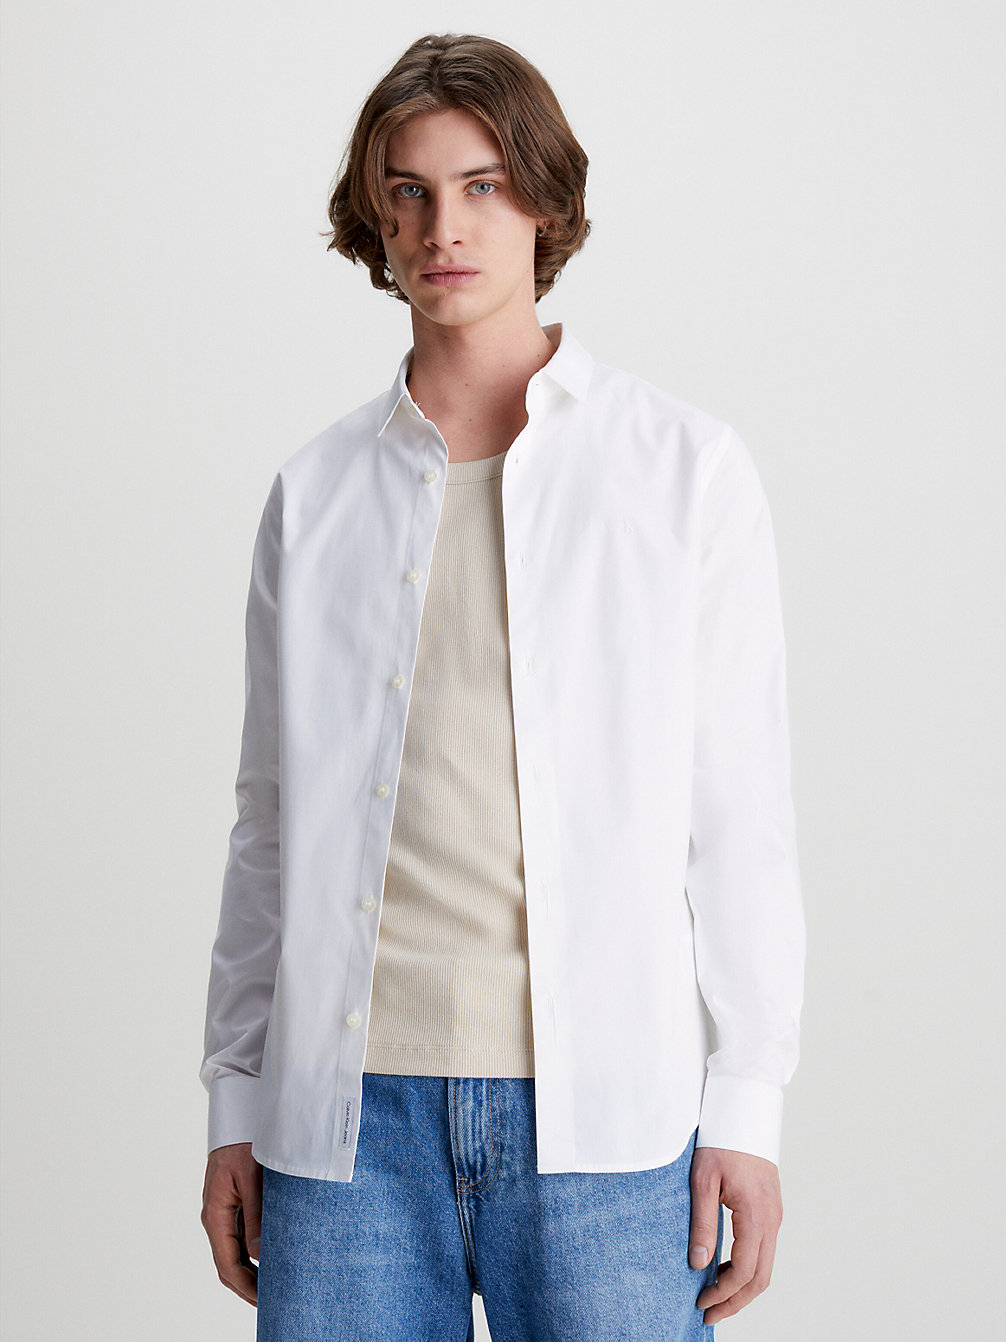 BRIGHT WHITE > Wąska Koszulka Z Bawełny Ze Streczem > undefined Mężczyźni - Calvin Klein